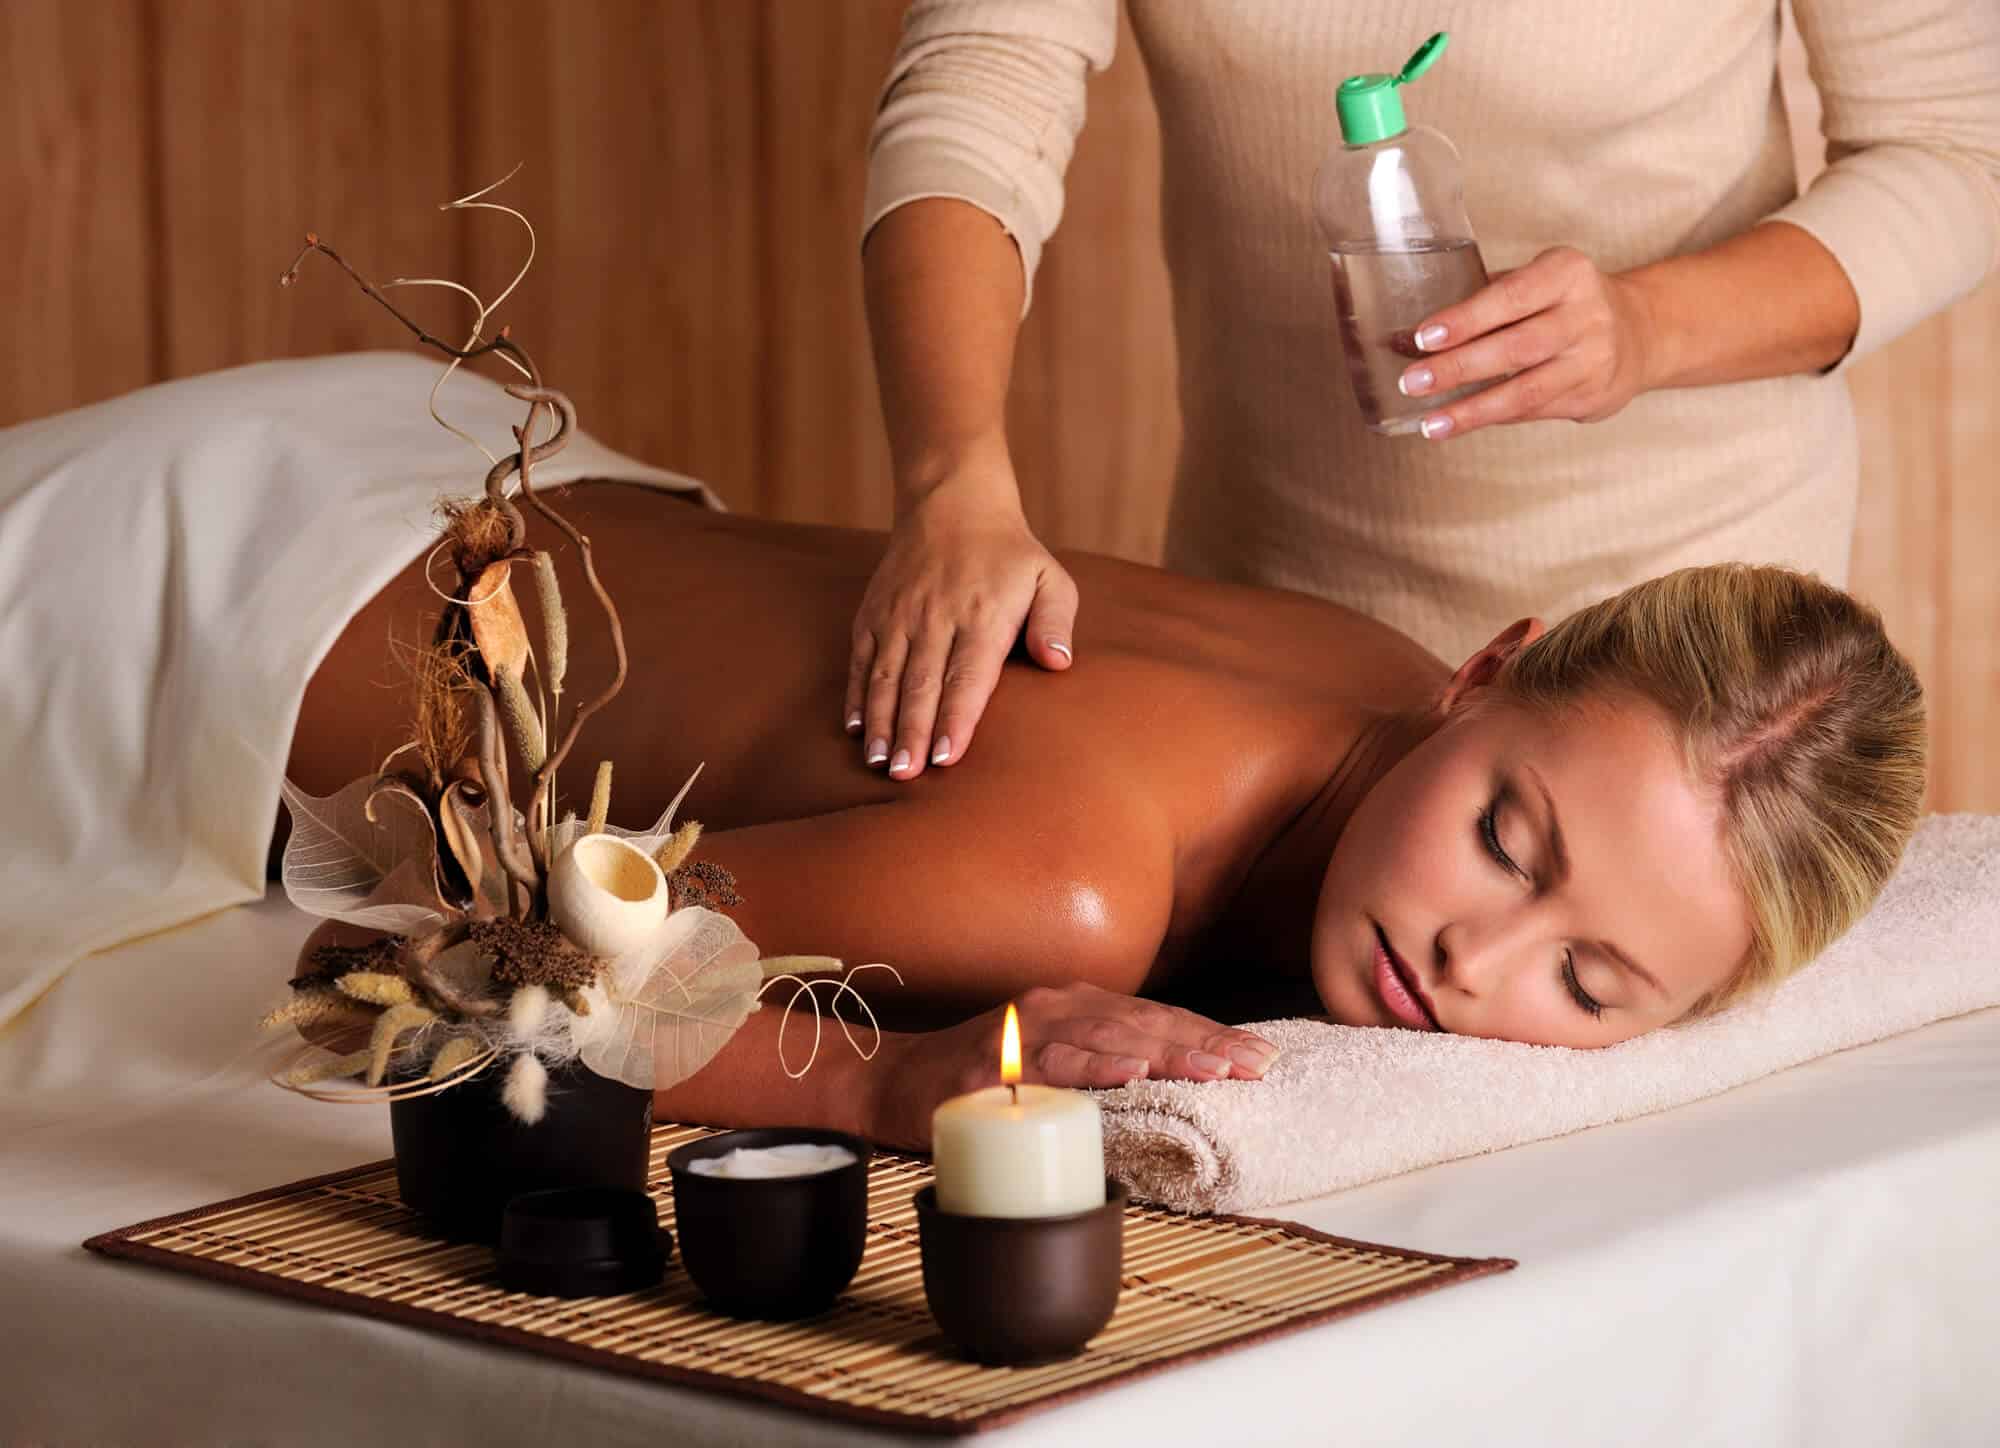 Massage therapist applying oil